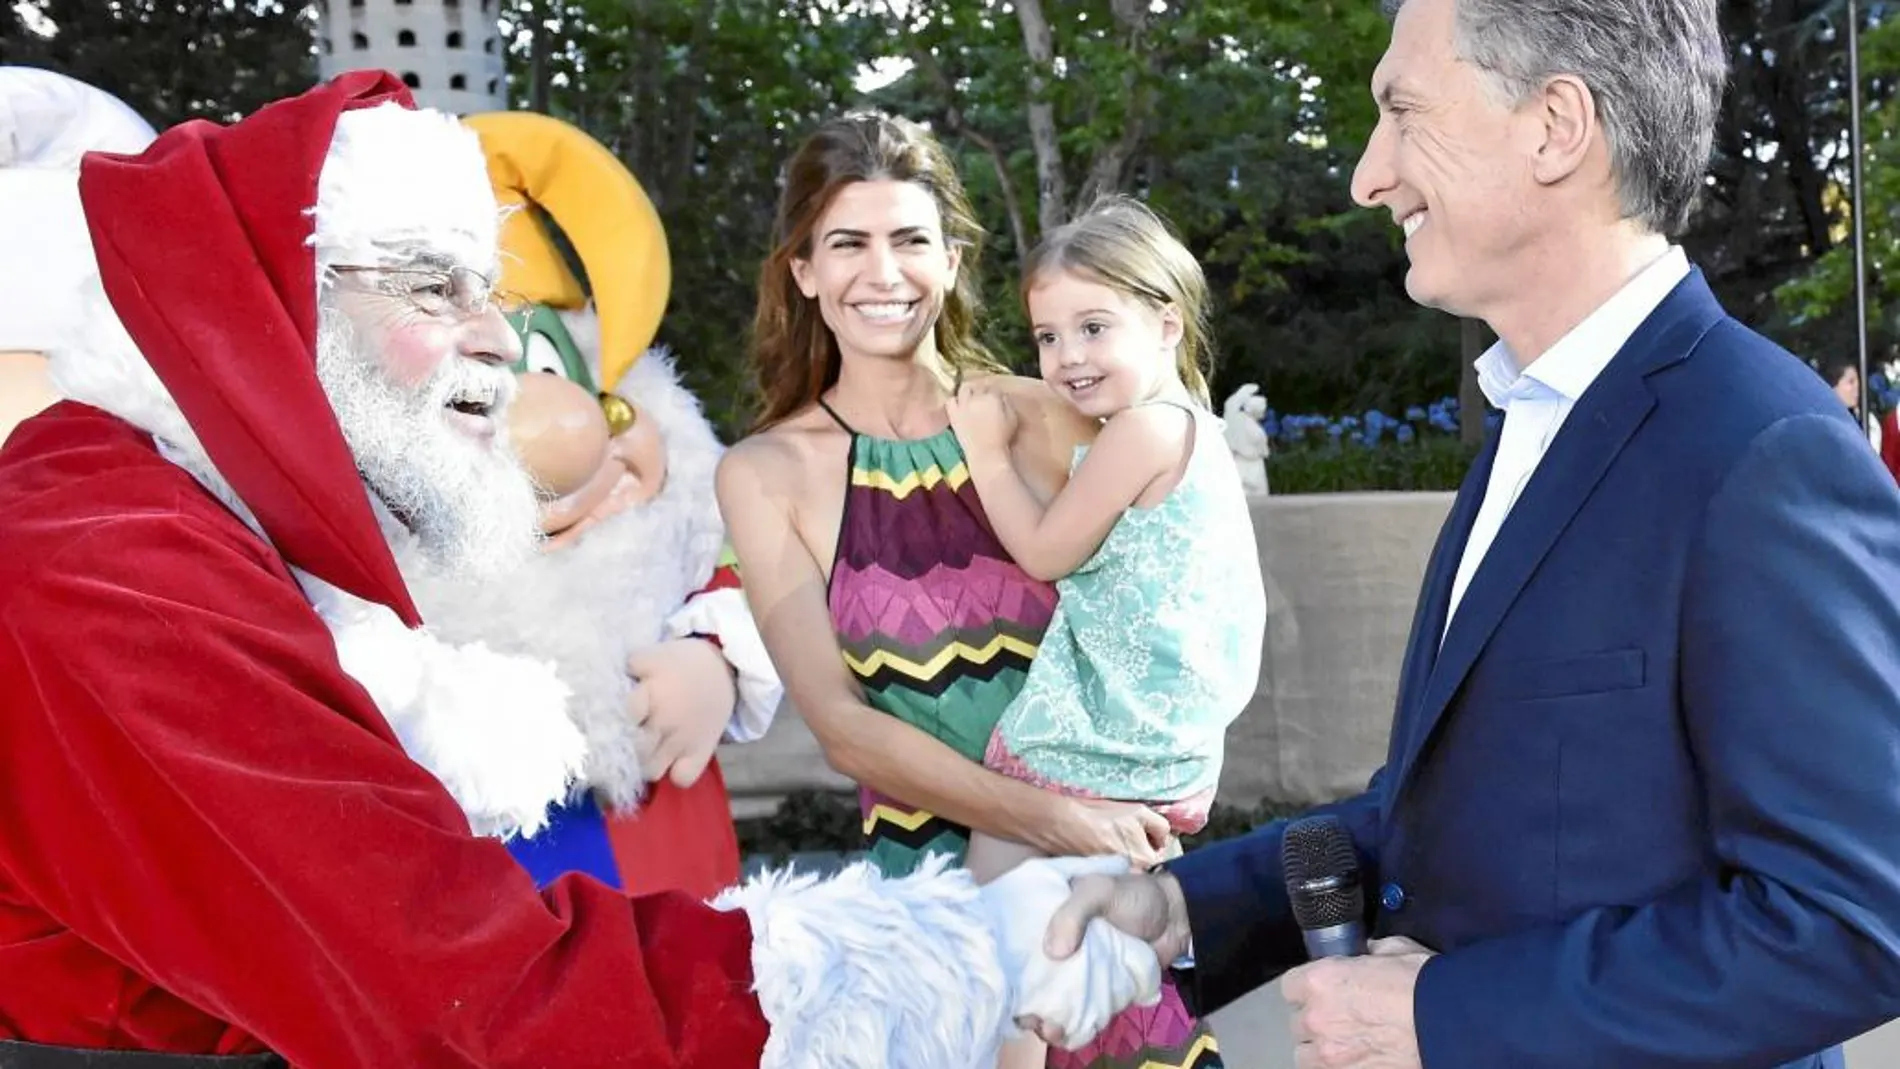 El presidente Mauricio Macri saluda a Santa Claus frente a la residencia oficial de Los Olivos en presencia de su mujer Juliana y su hija Antonia